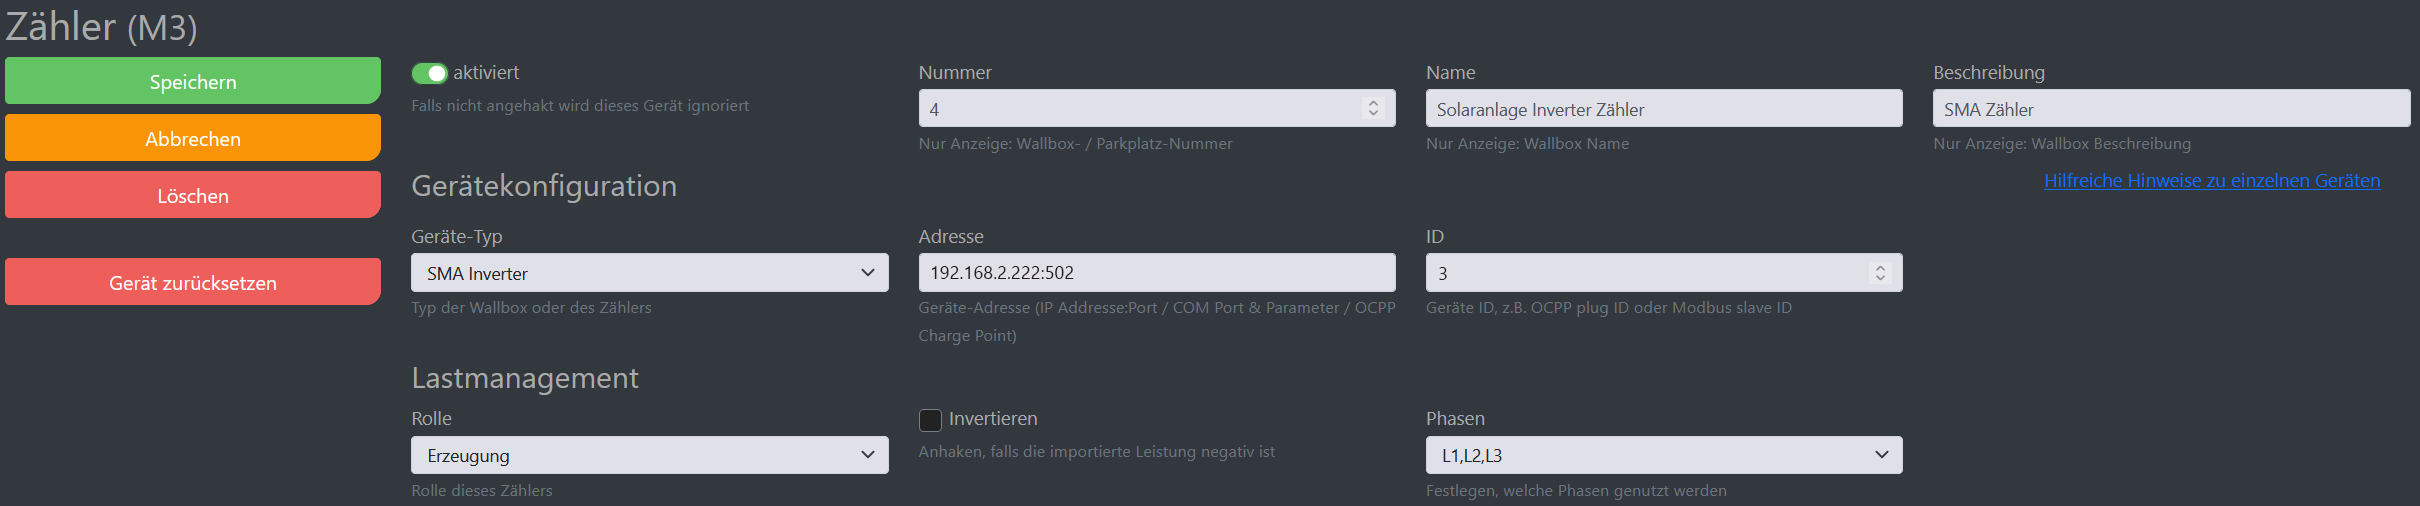 Img Schermata di configurazione di cFos Charging Manager